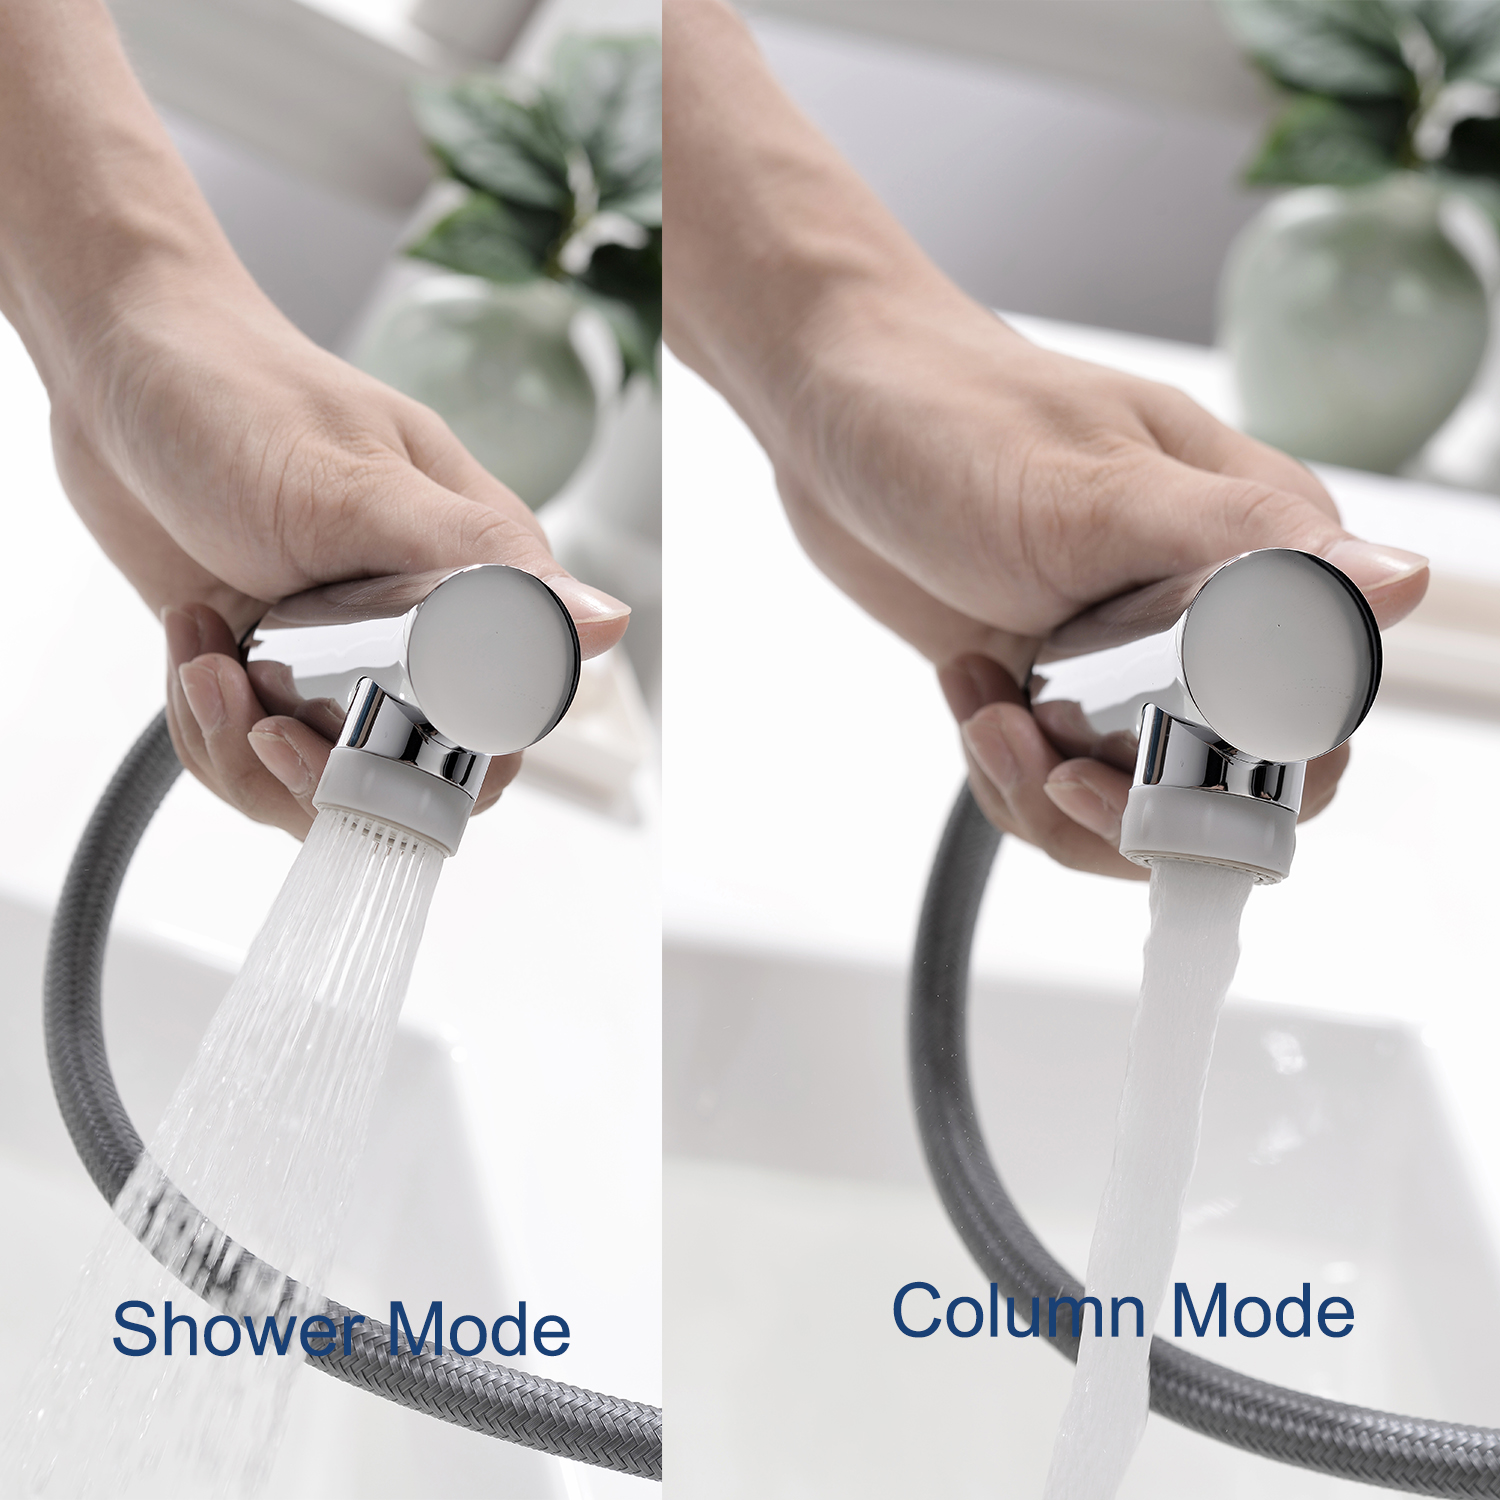 Robinet de salle de bain Aquacubic monotrou à deux modes de pulvérisation avec pulvérisateur rétractable